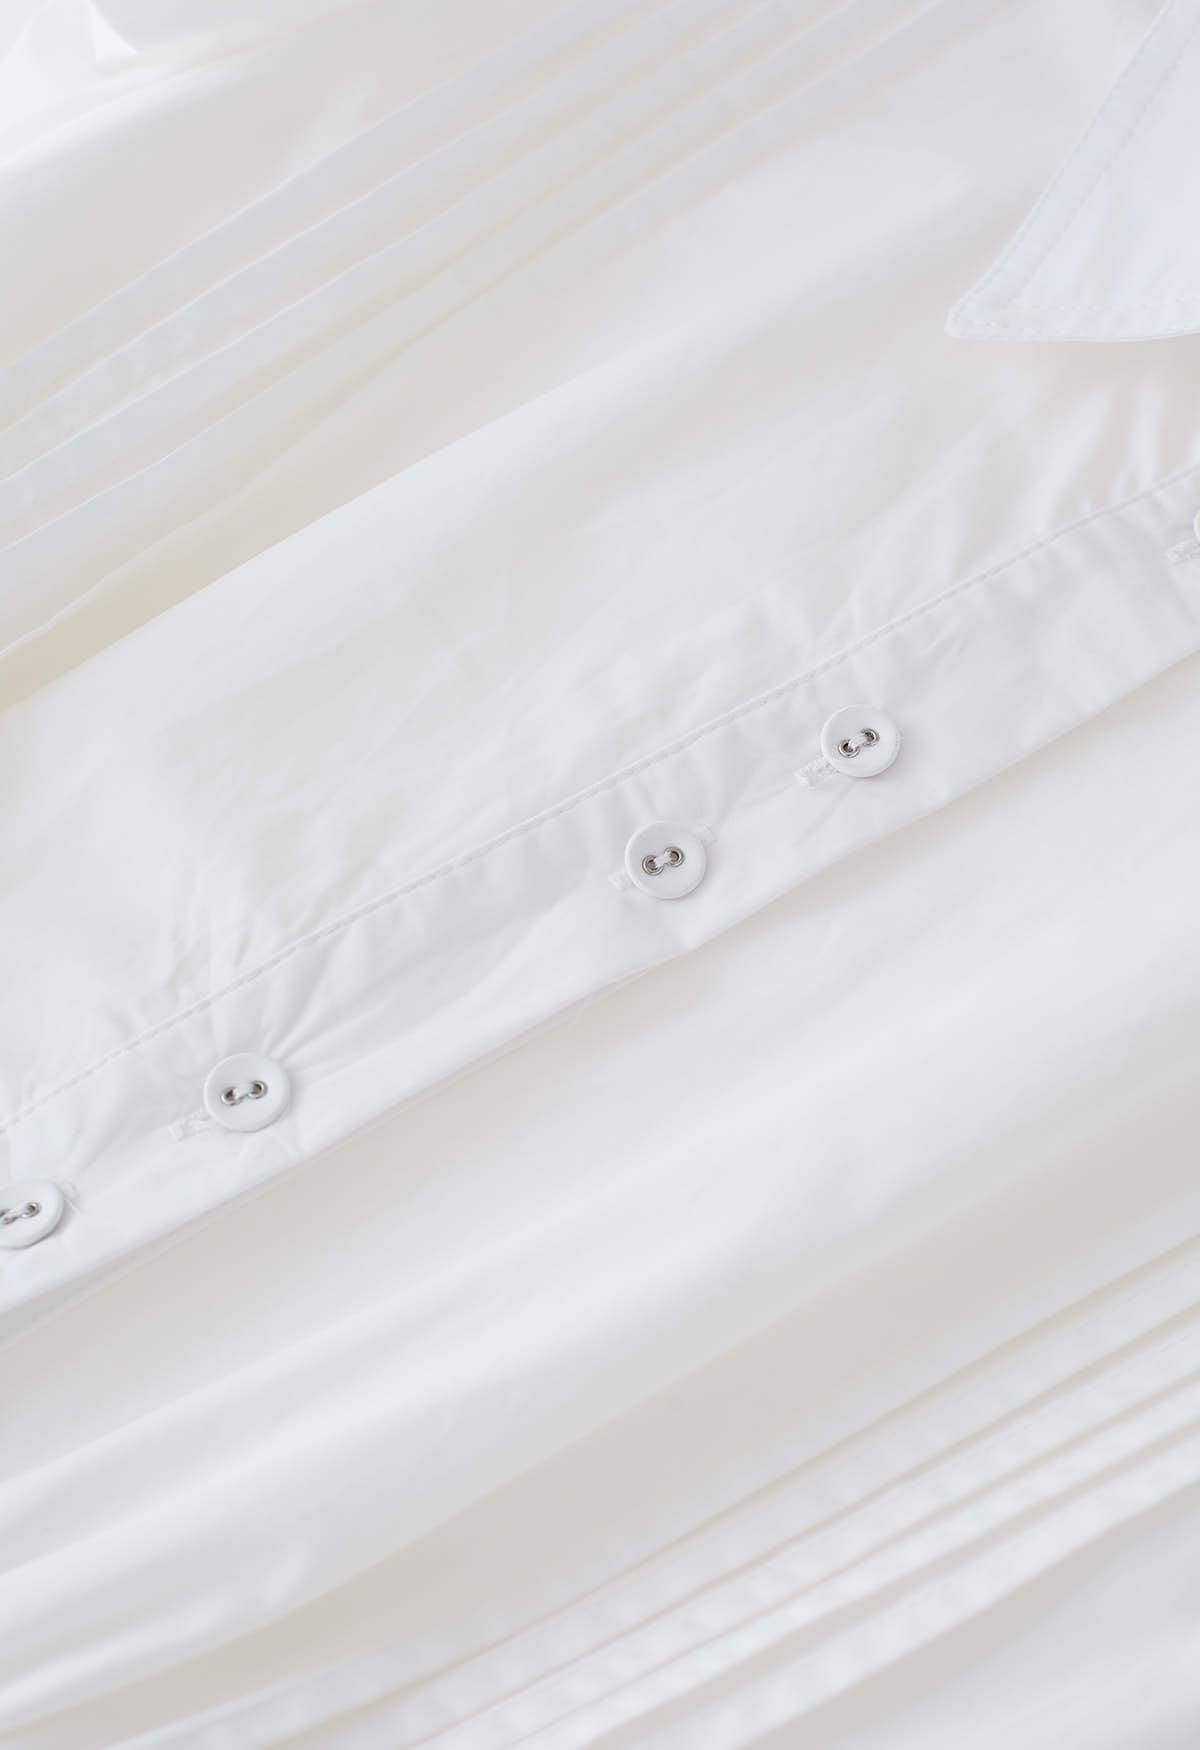 Flutter Sleeve Tie Waist Skater Dress in White